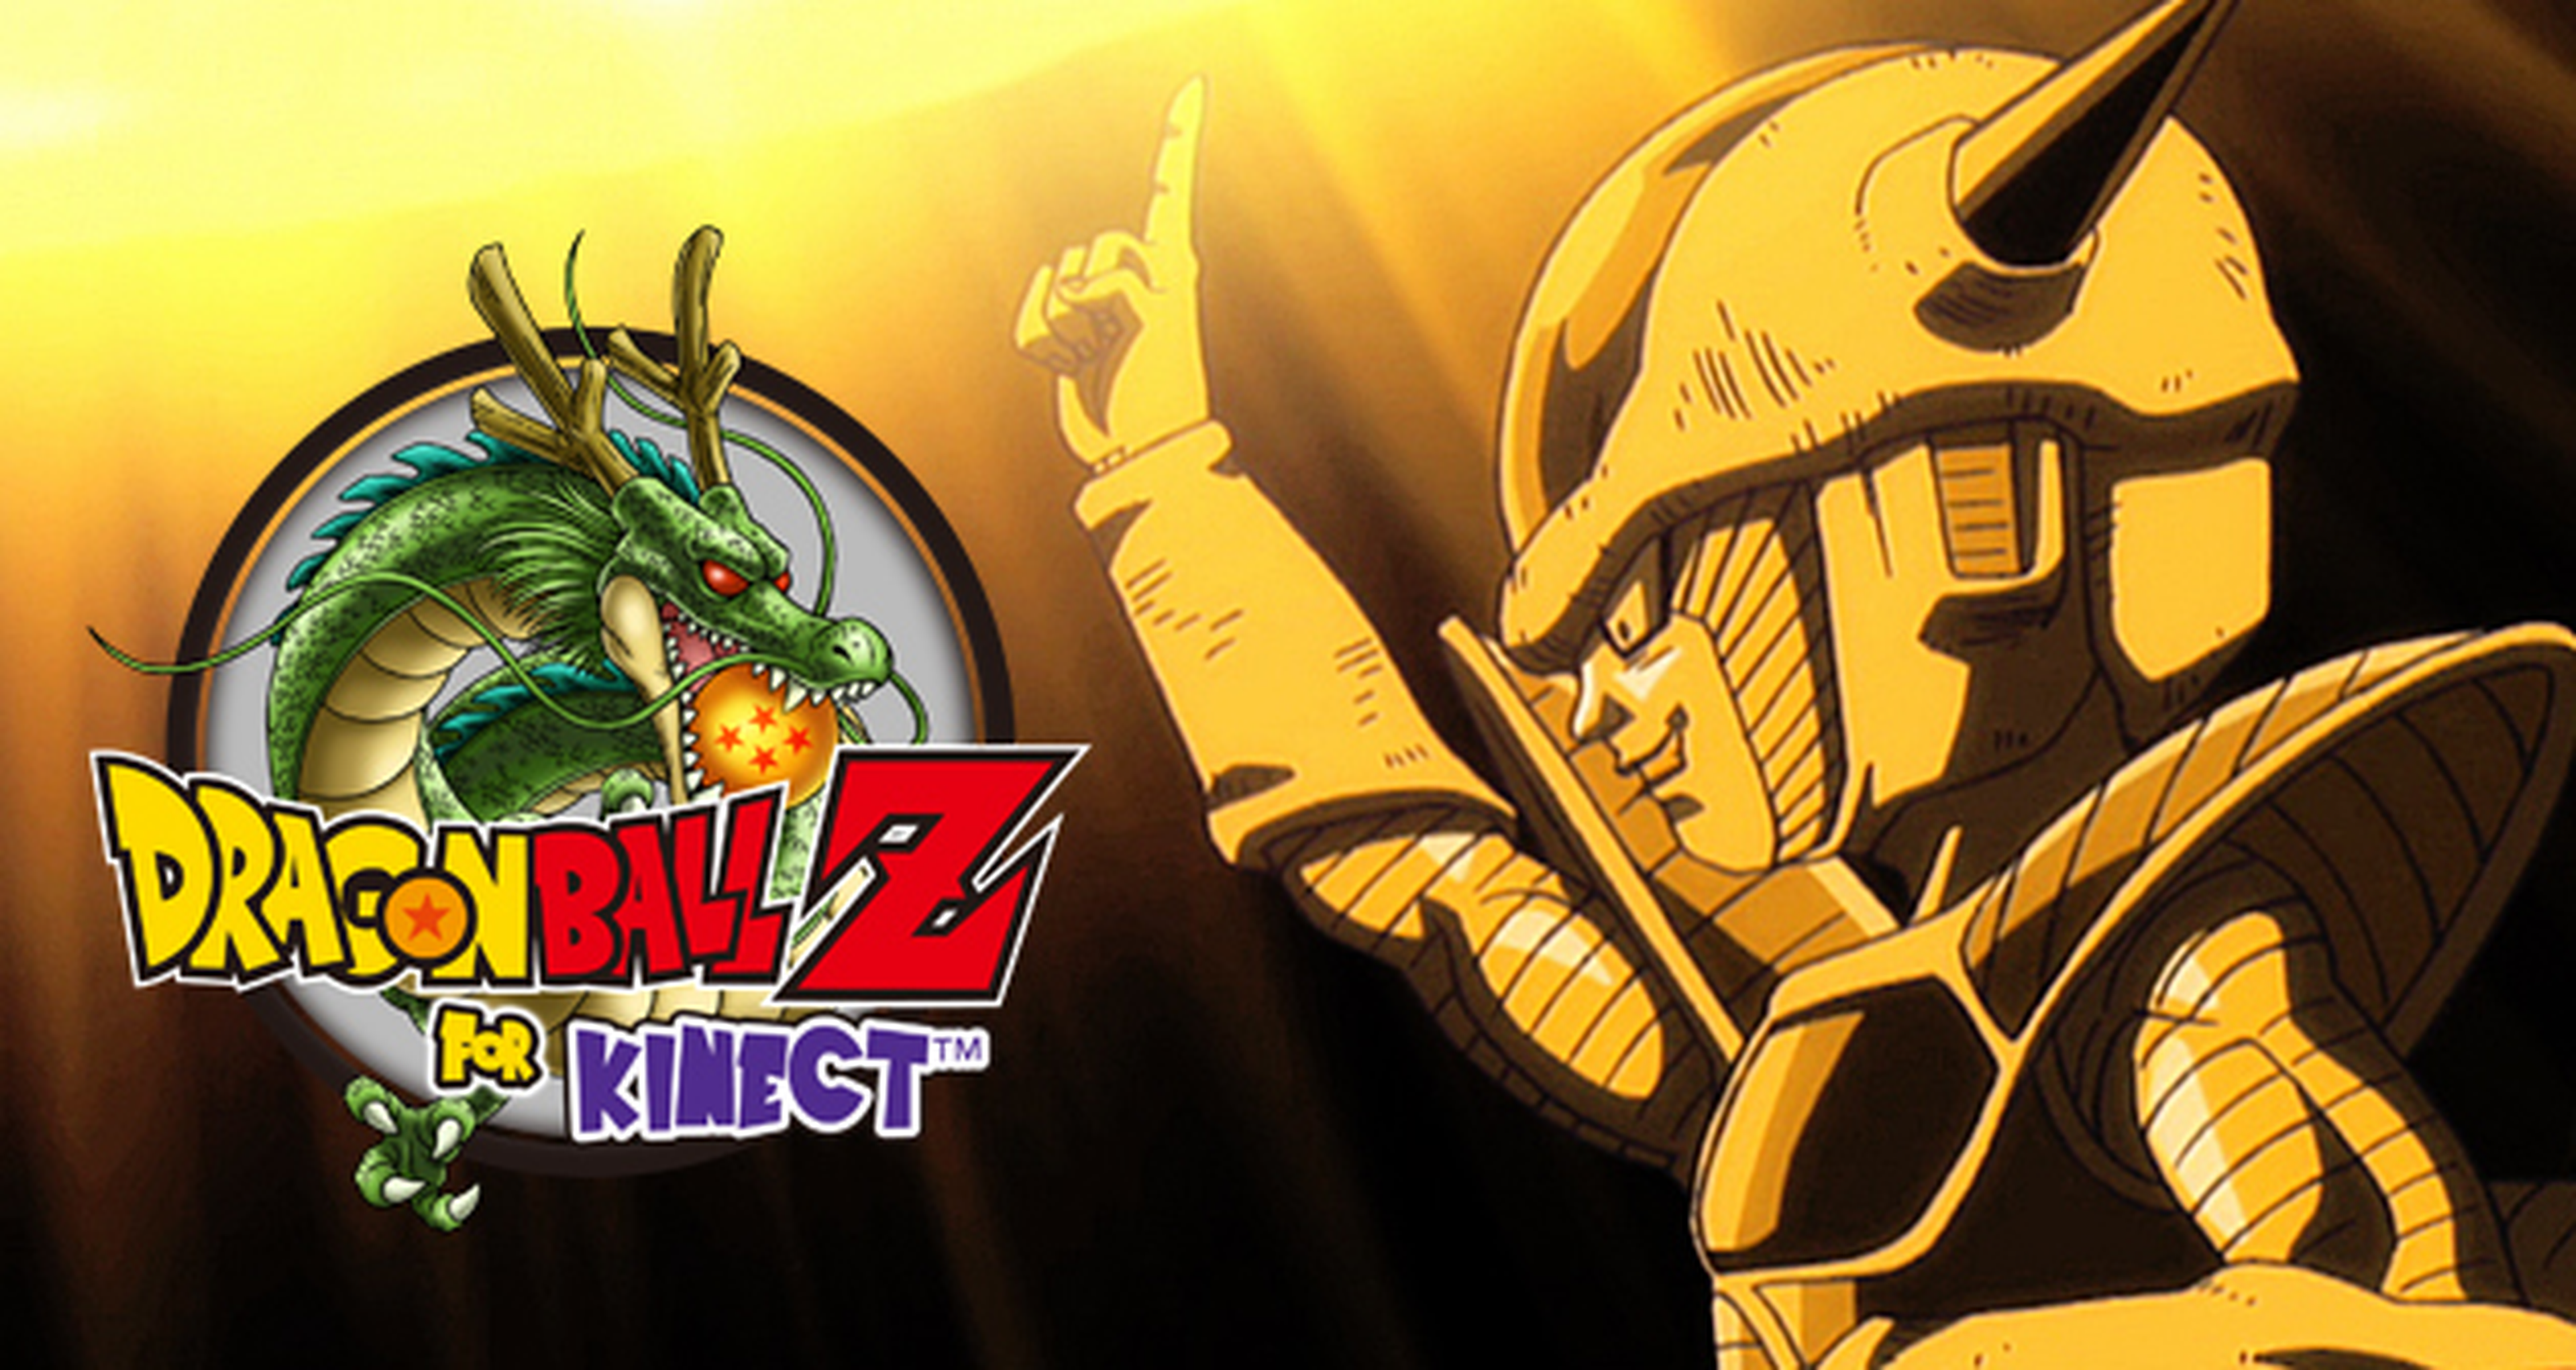 Análisis saiyano de Dragon Ball Z for Kinect